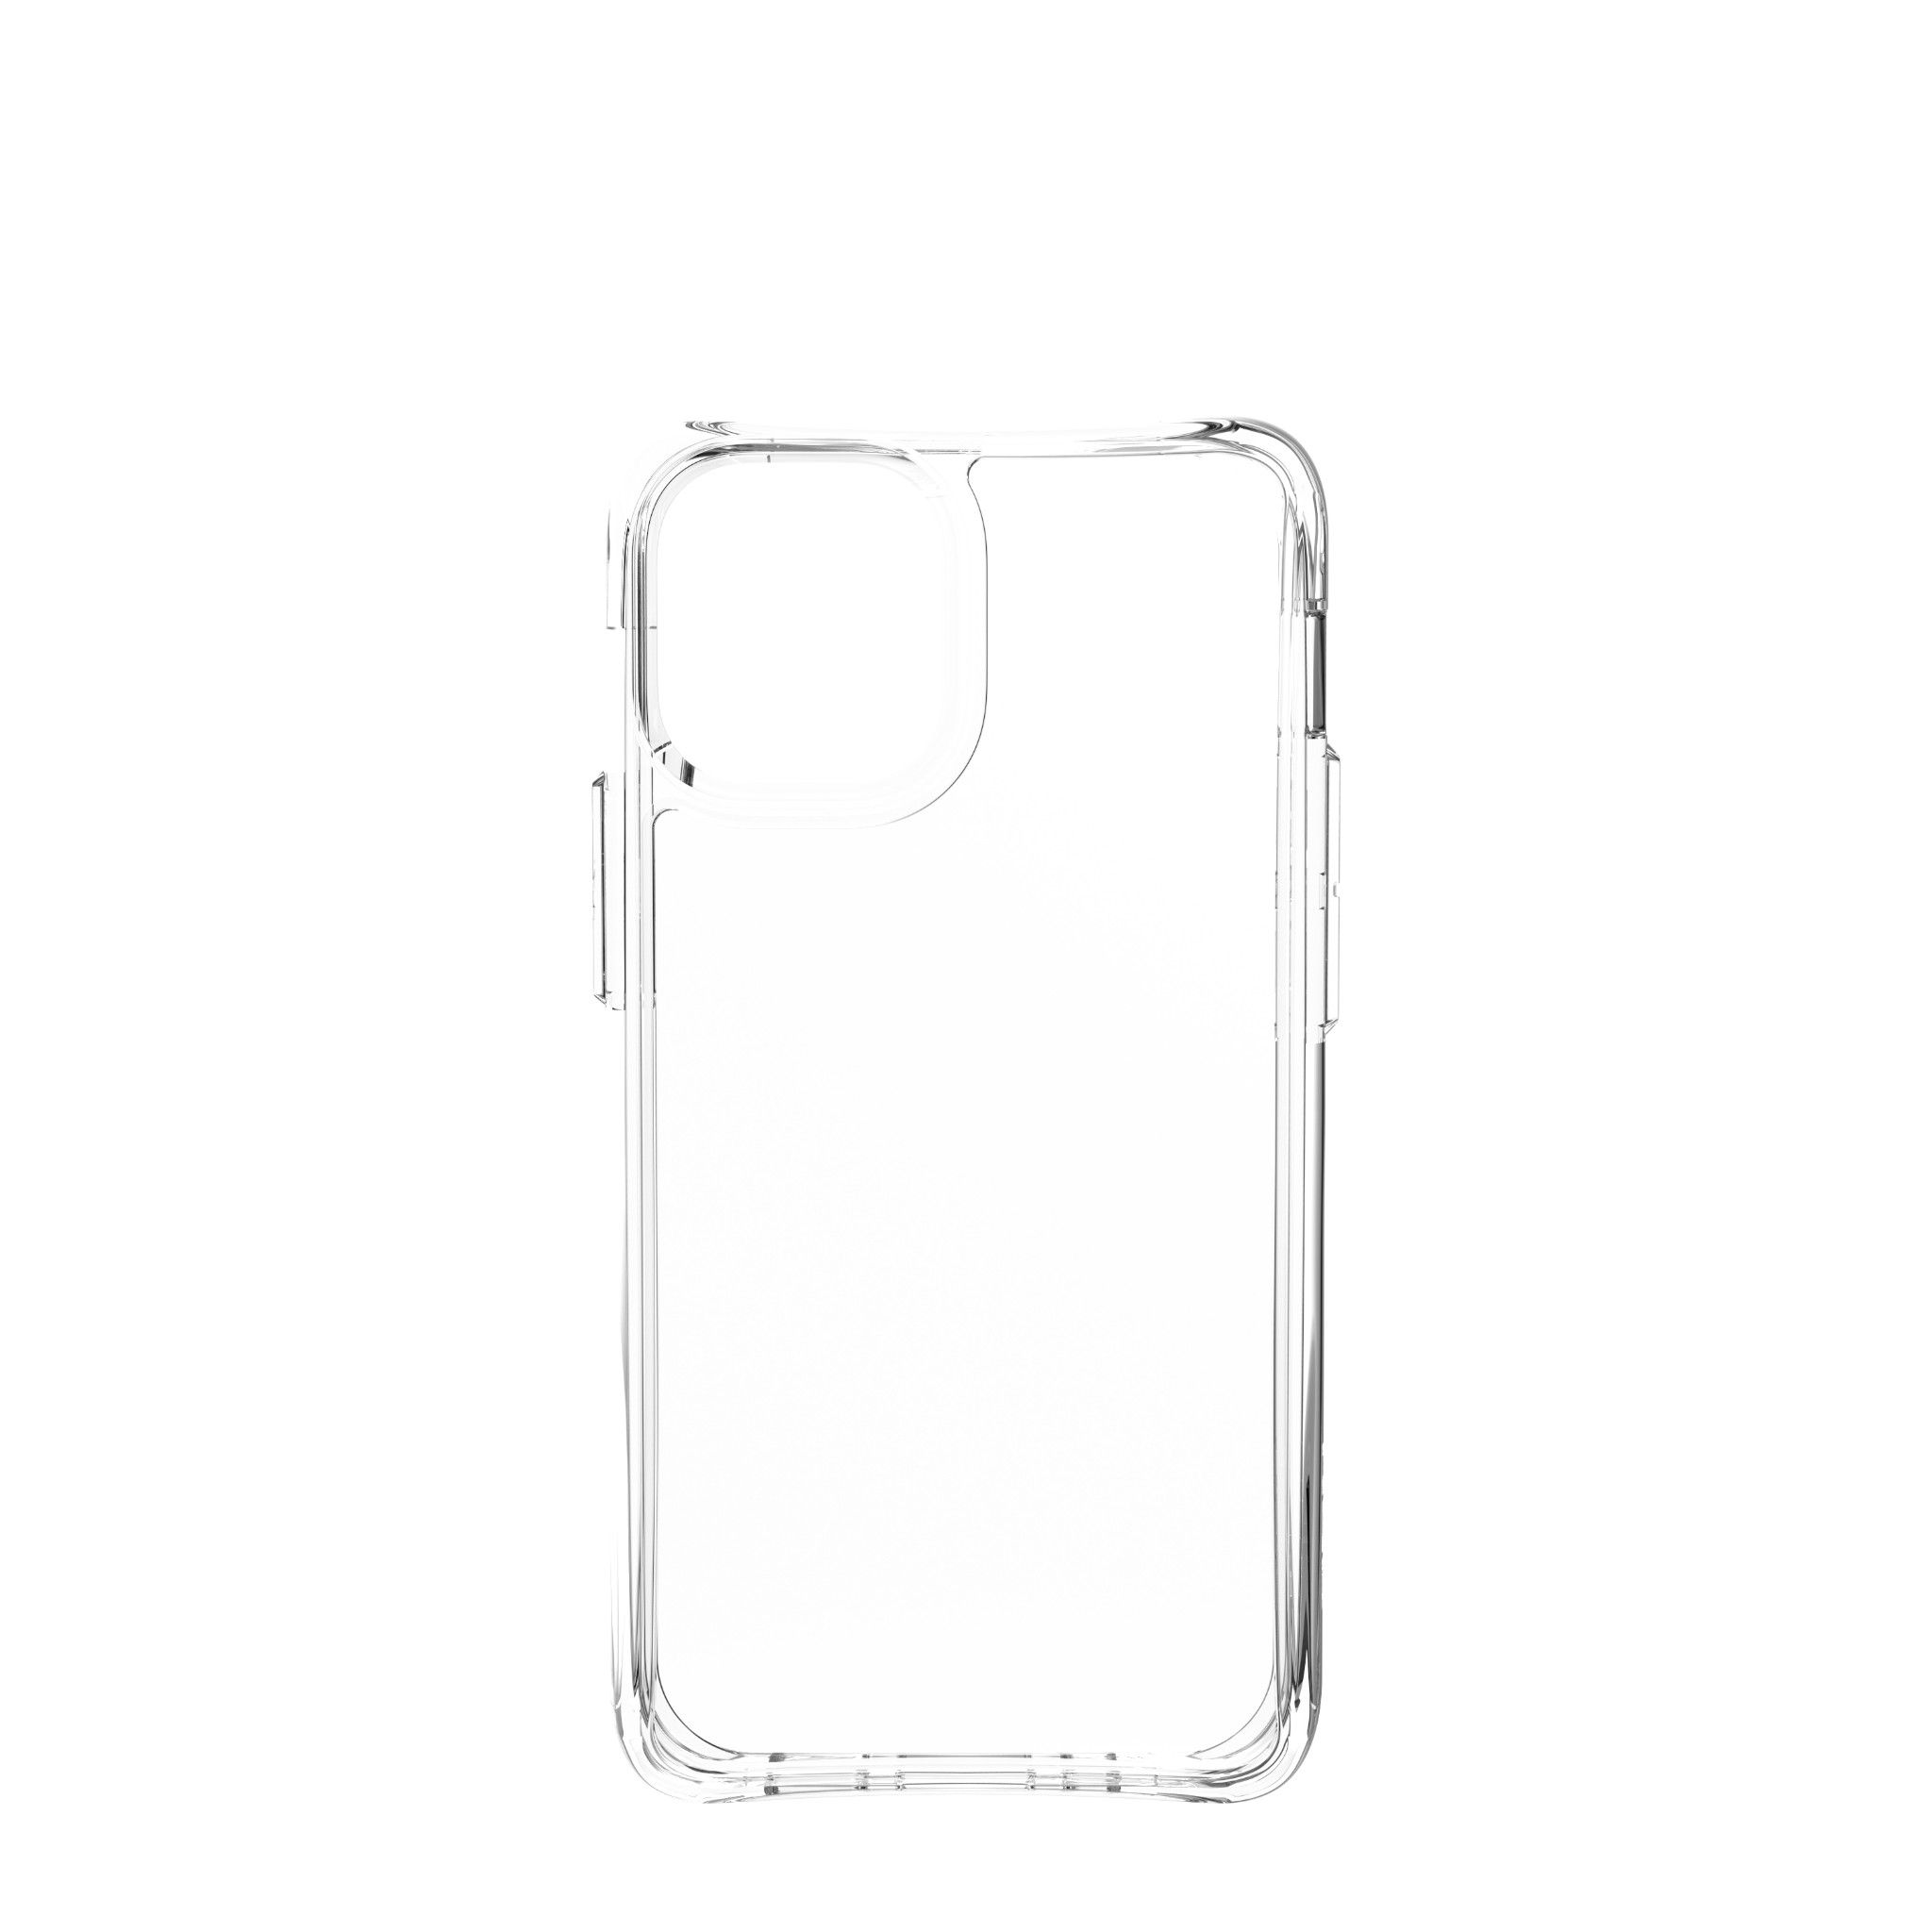  Ốp lưng Plyo cho iPhone 12 Mini [5.4 inch] 